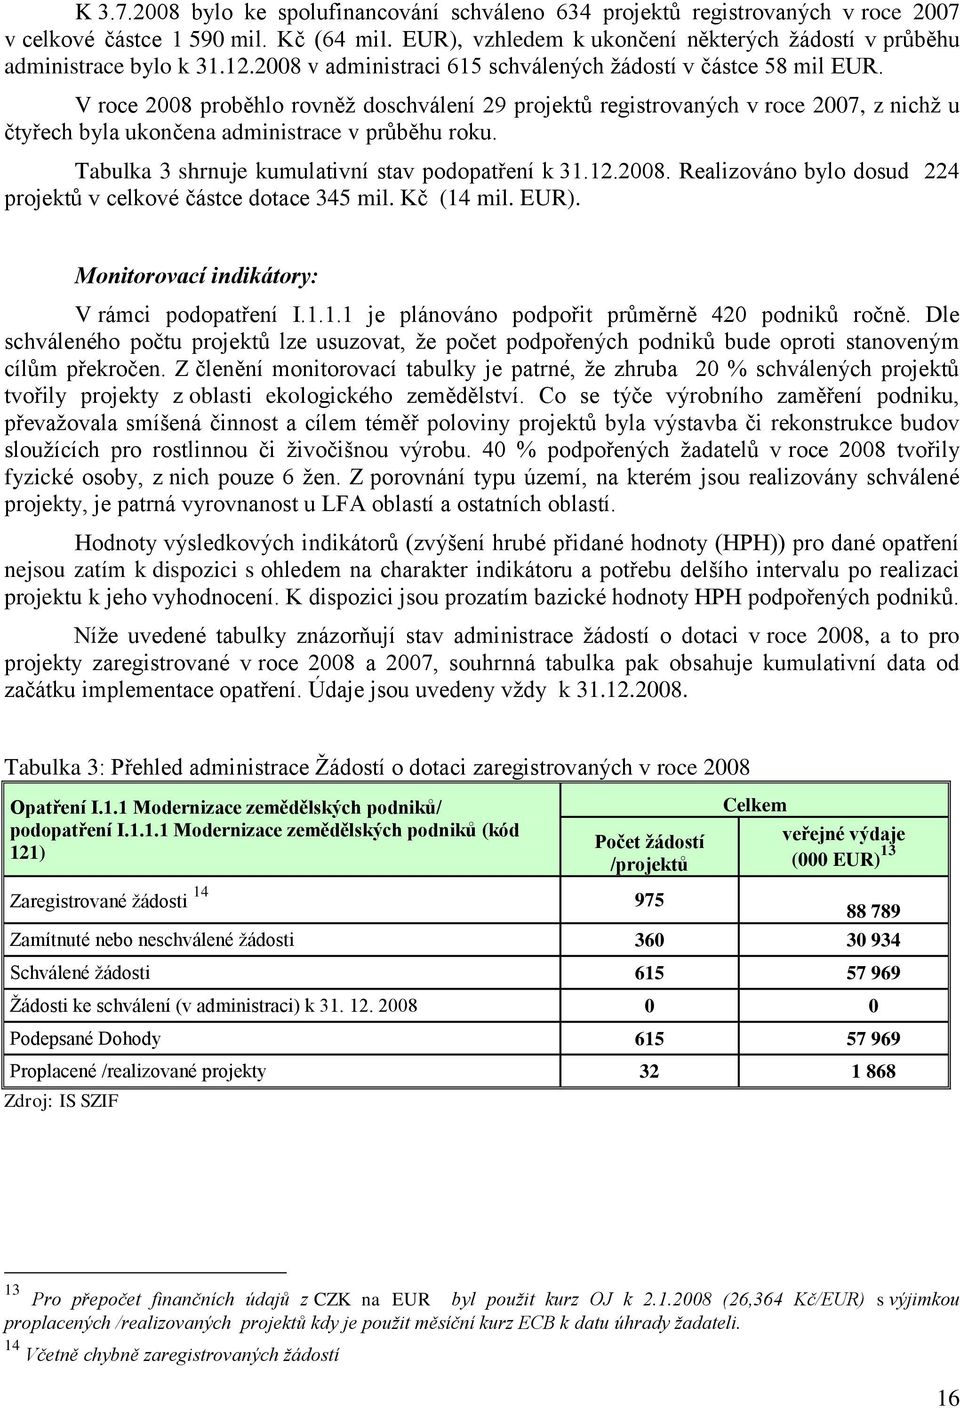 V roce 2008 proběhlo rovněţ doschválení 29 projektů registrovaných v roce 2007, z nichţ u čtyřech byla ukončena administrace v průběhu roku. Tabulka 3 shrnuje kumulativní stav podopatření k 31.12.